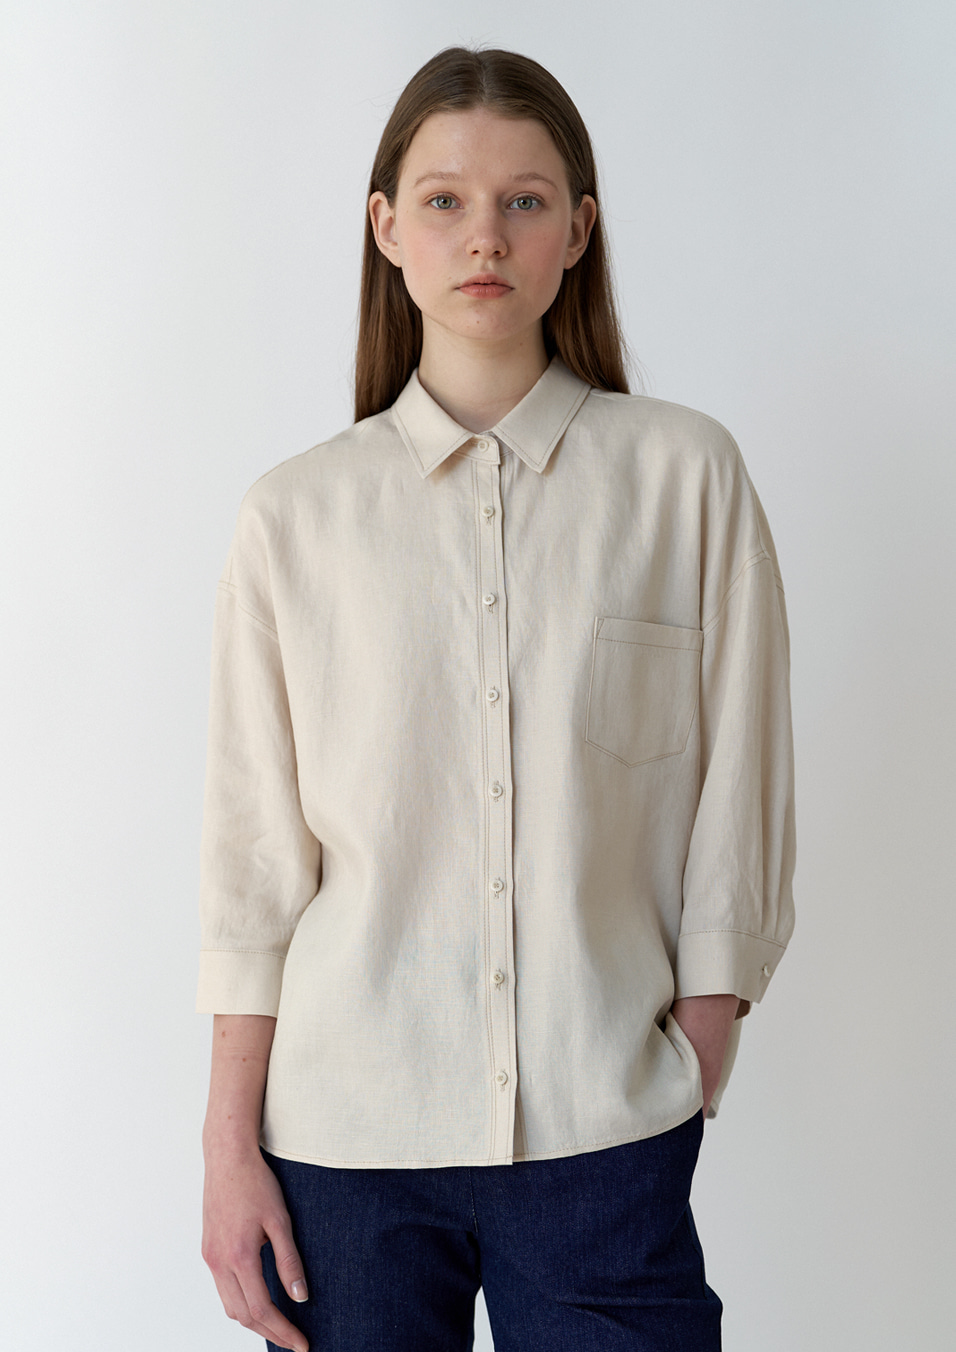 linen stitch shirts-beige